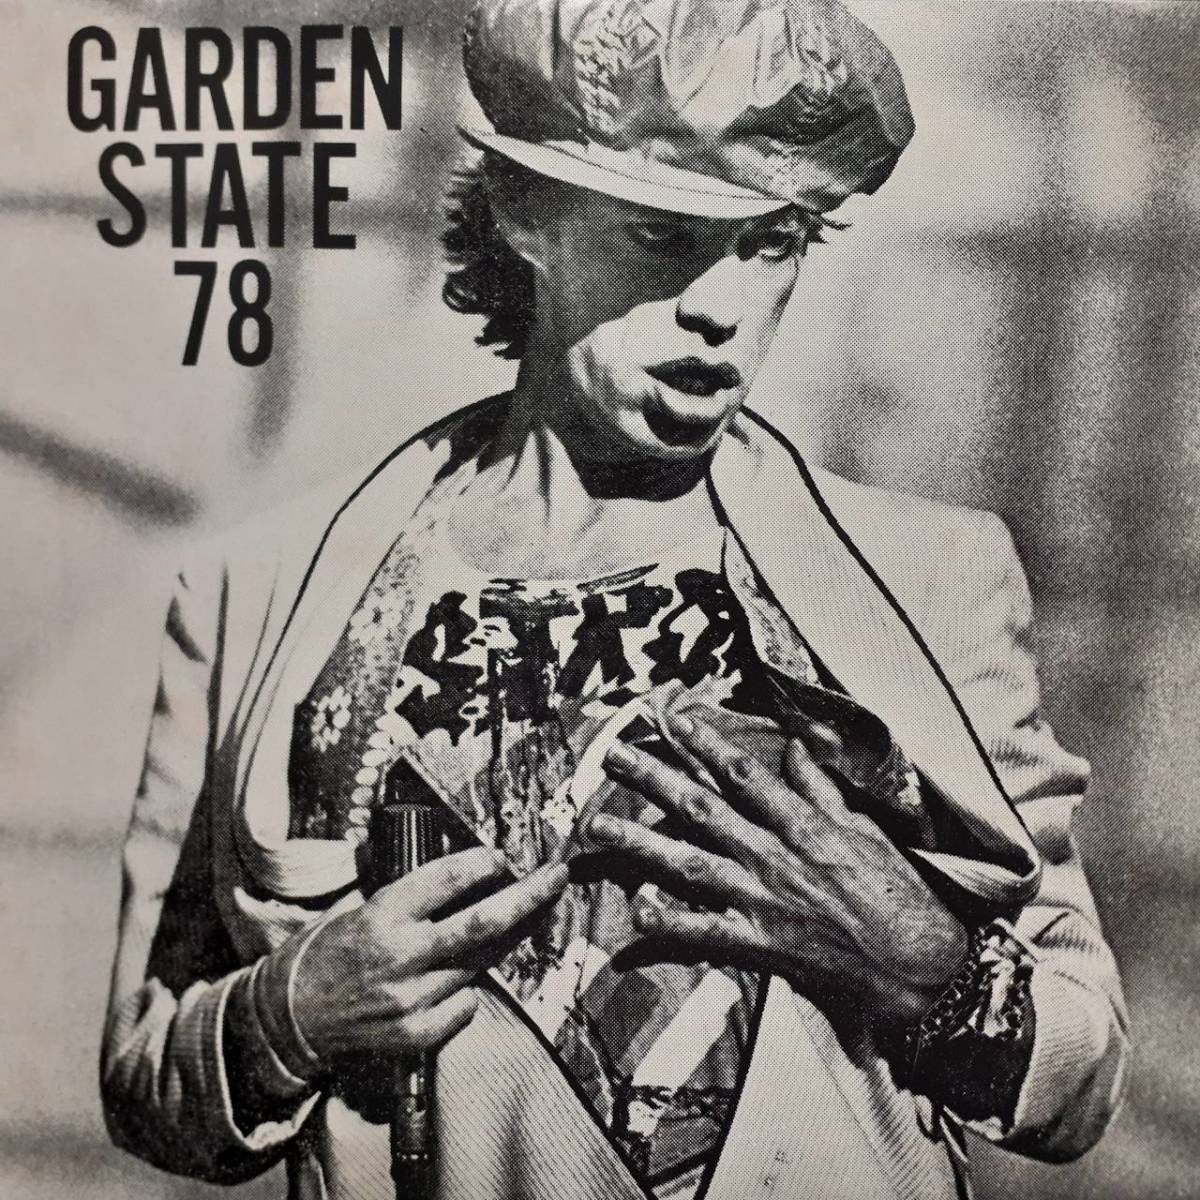 高音質！米2LP プライベート盤！Rolling Stones / Garden State 78 1986年 Amazing Stork 702 6/14のNJ州 Capitol Theatre での LIVE録音_画像1